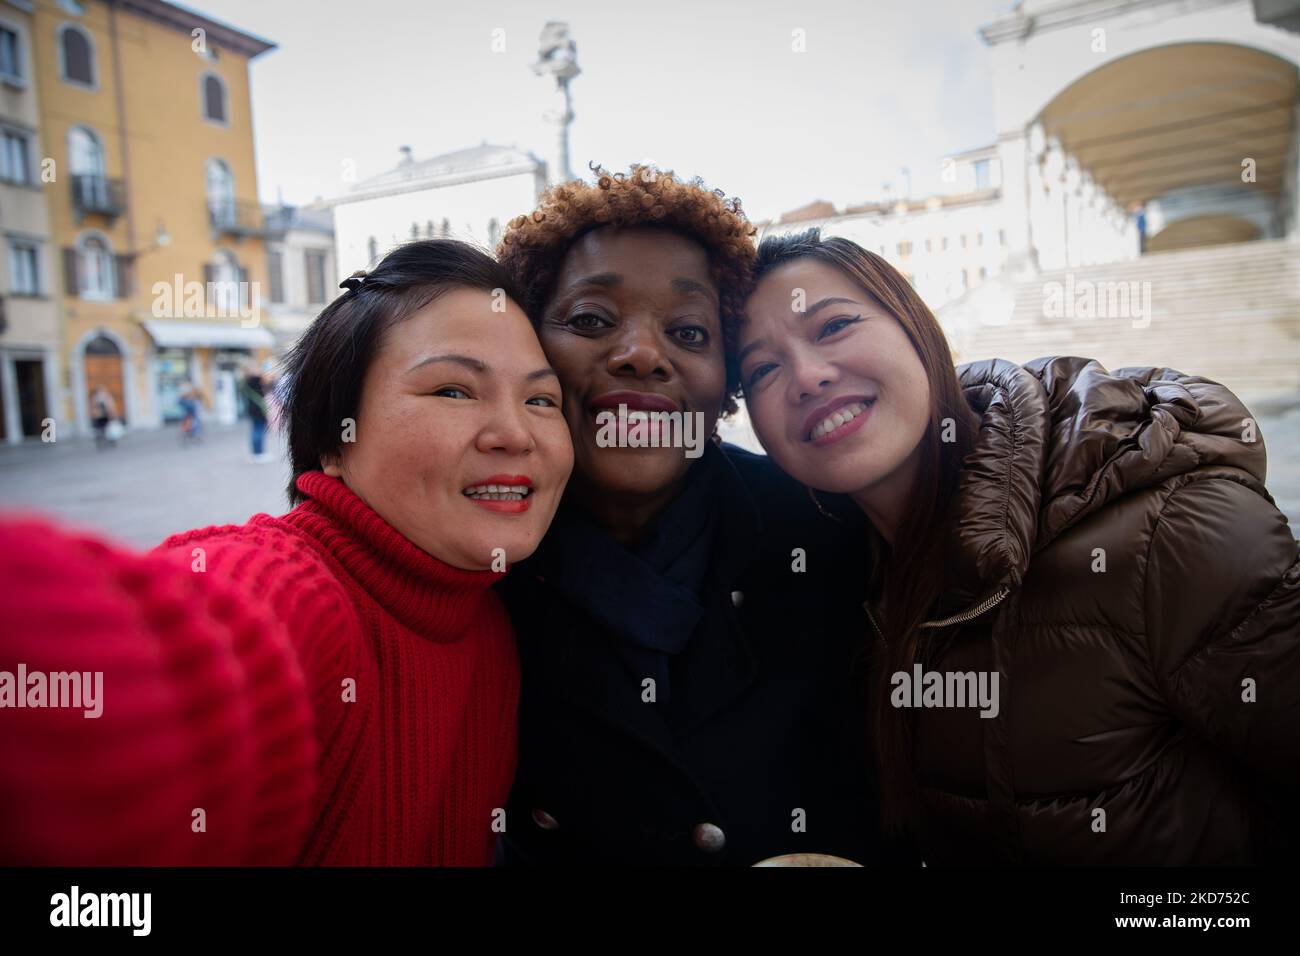 Trois amis souriants et variés prennent le selfie lors de leur promenade au centre-ville. Banque D'Images